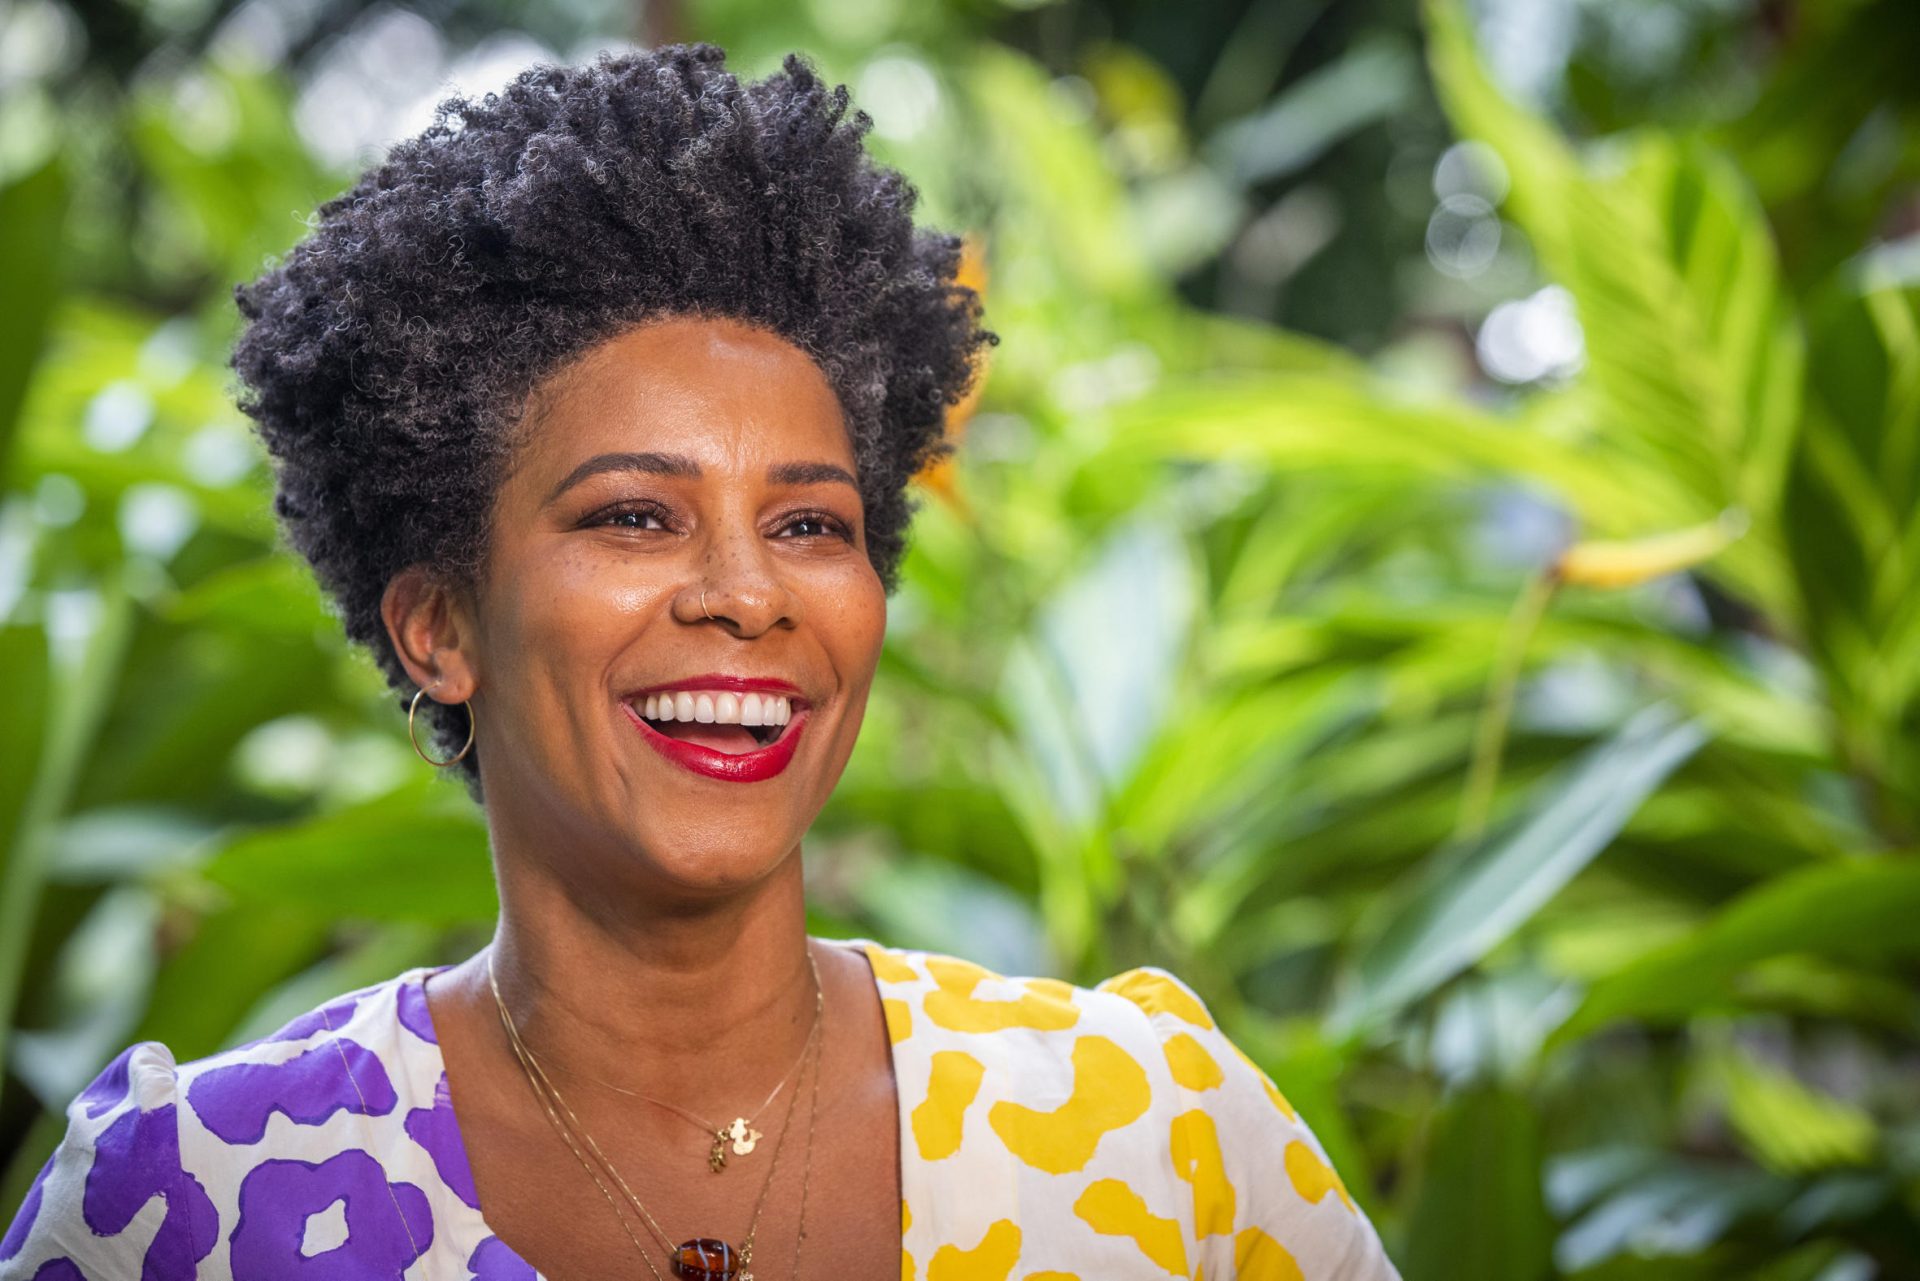 Rita Batista desabafa sobre atitude da Globo com a diversidade: “Não é favor”